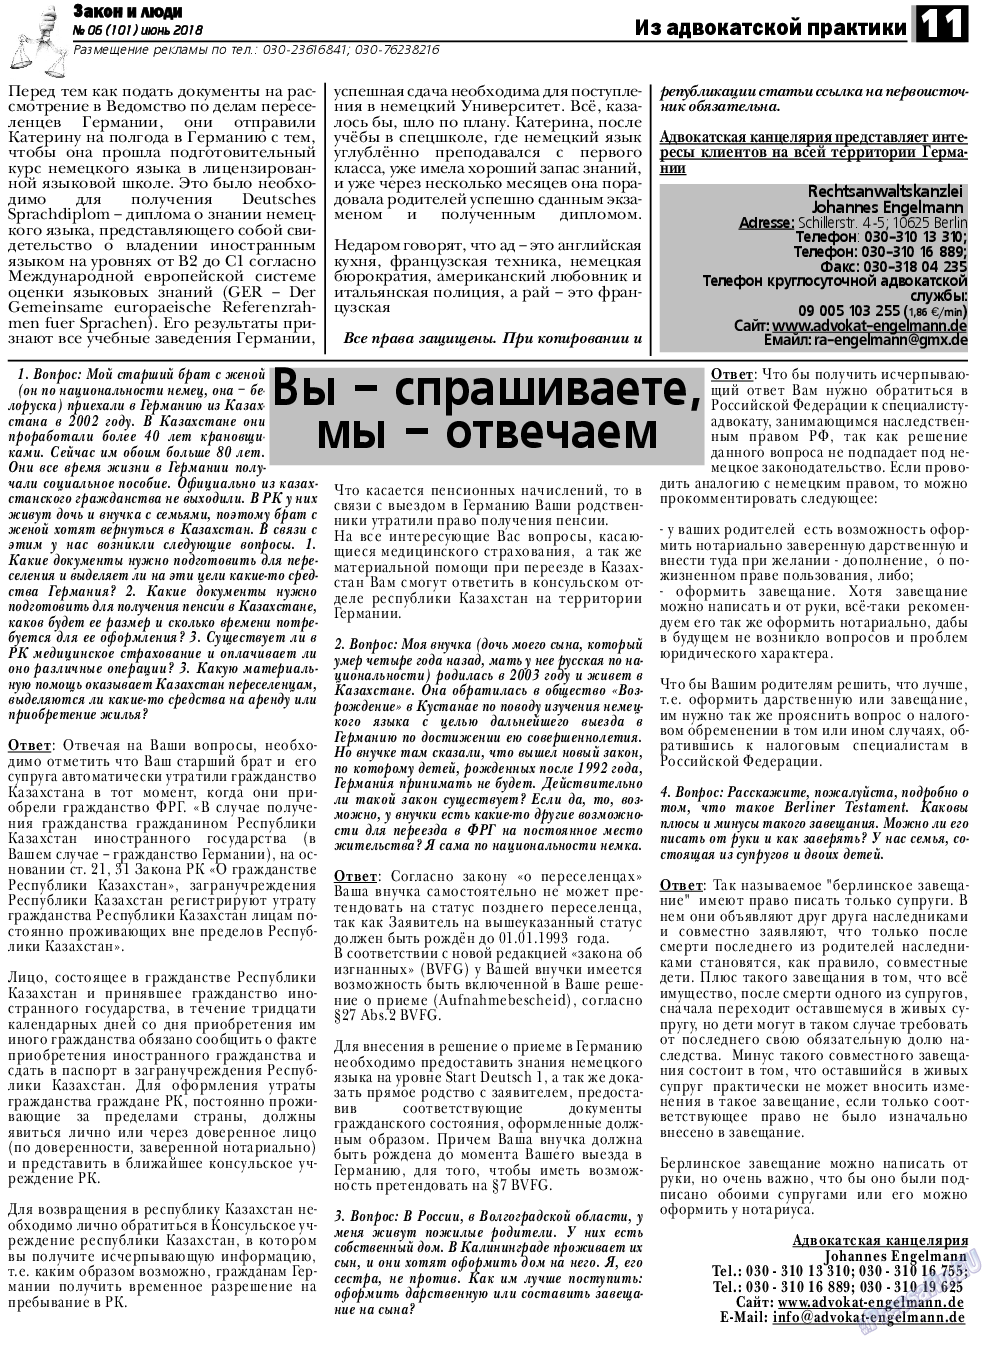 Закон и люди, газета. 2018 №6 стр.11